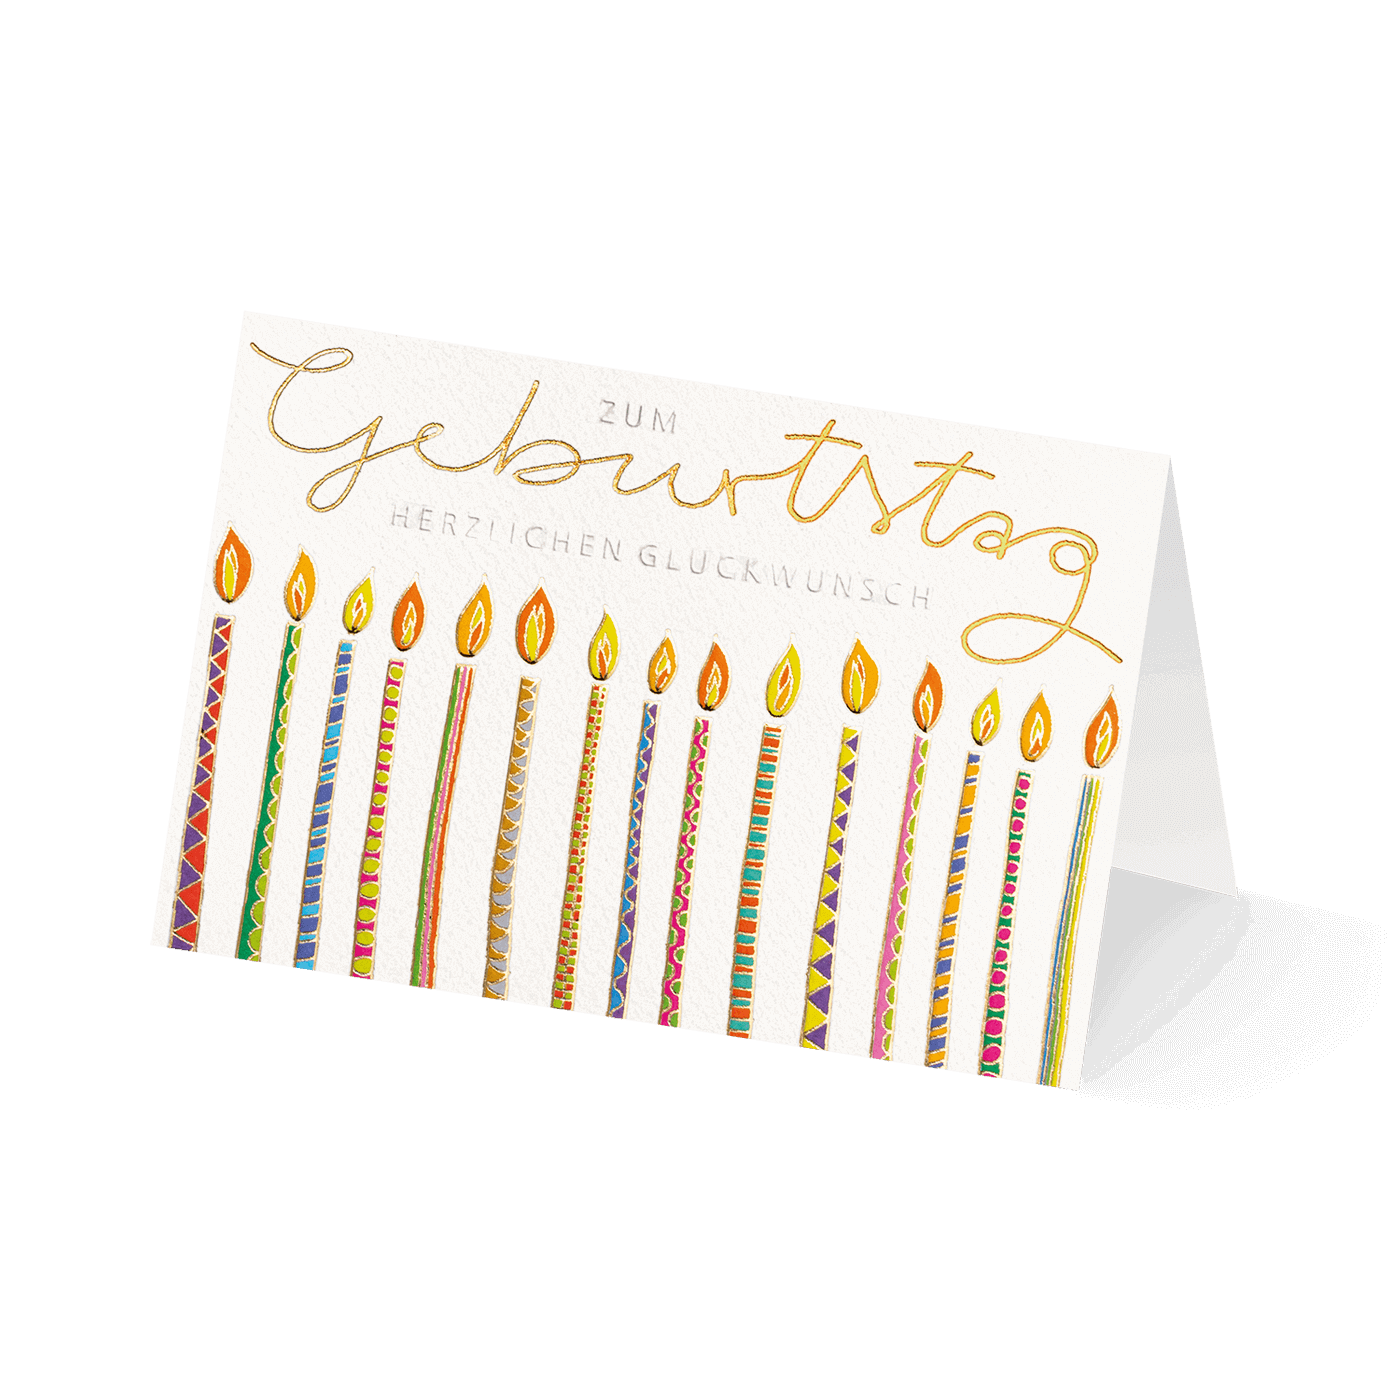 Grußkarte „Edle Geburtstagswünsche“ kaufen im UNICEF Grußkartenshop. Bild 4